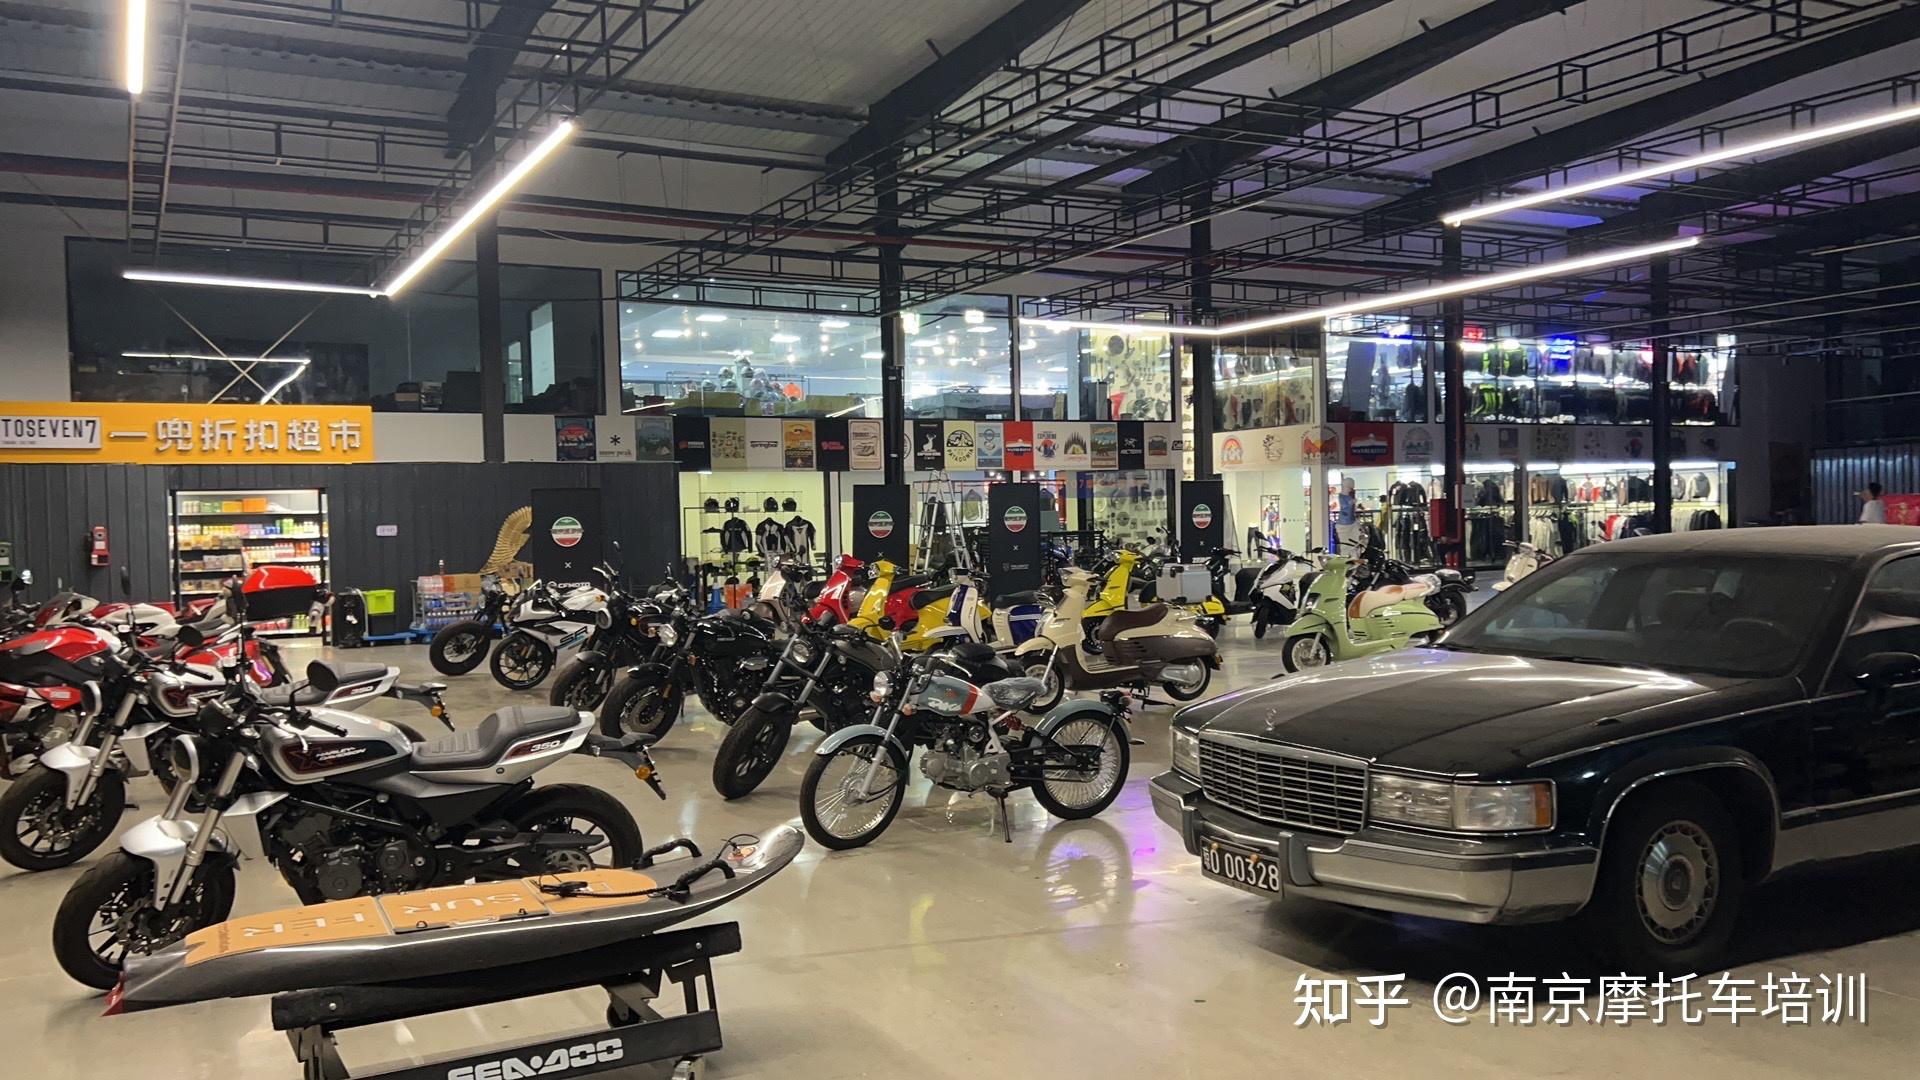 增驾摩托车流程及费用 广州摩托车驾校 - 知乎